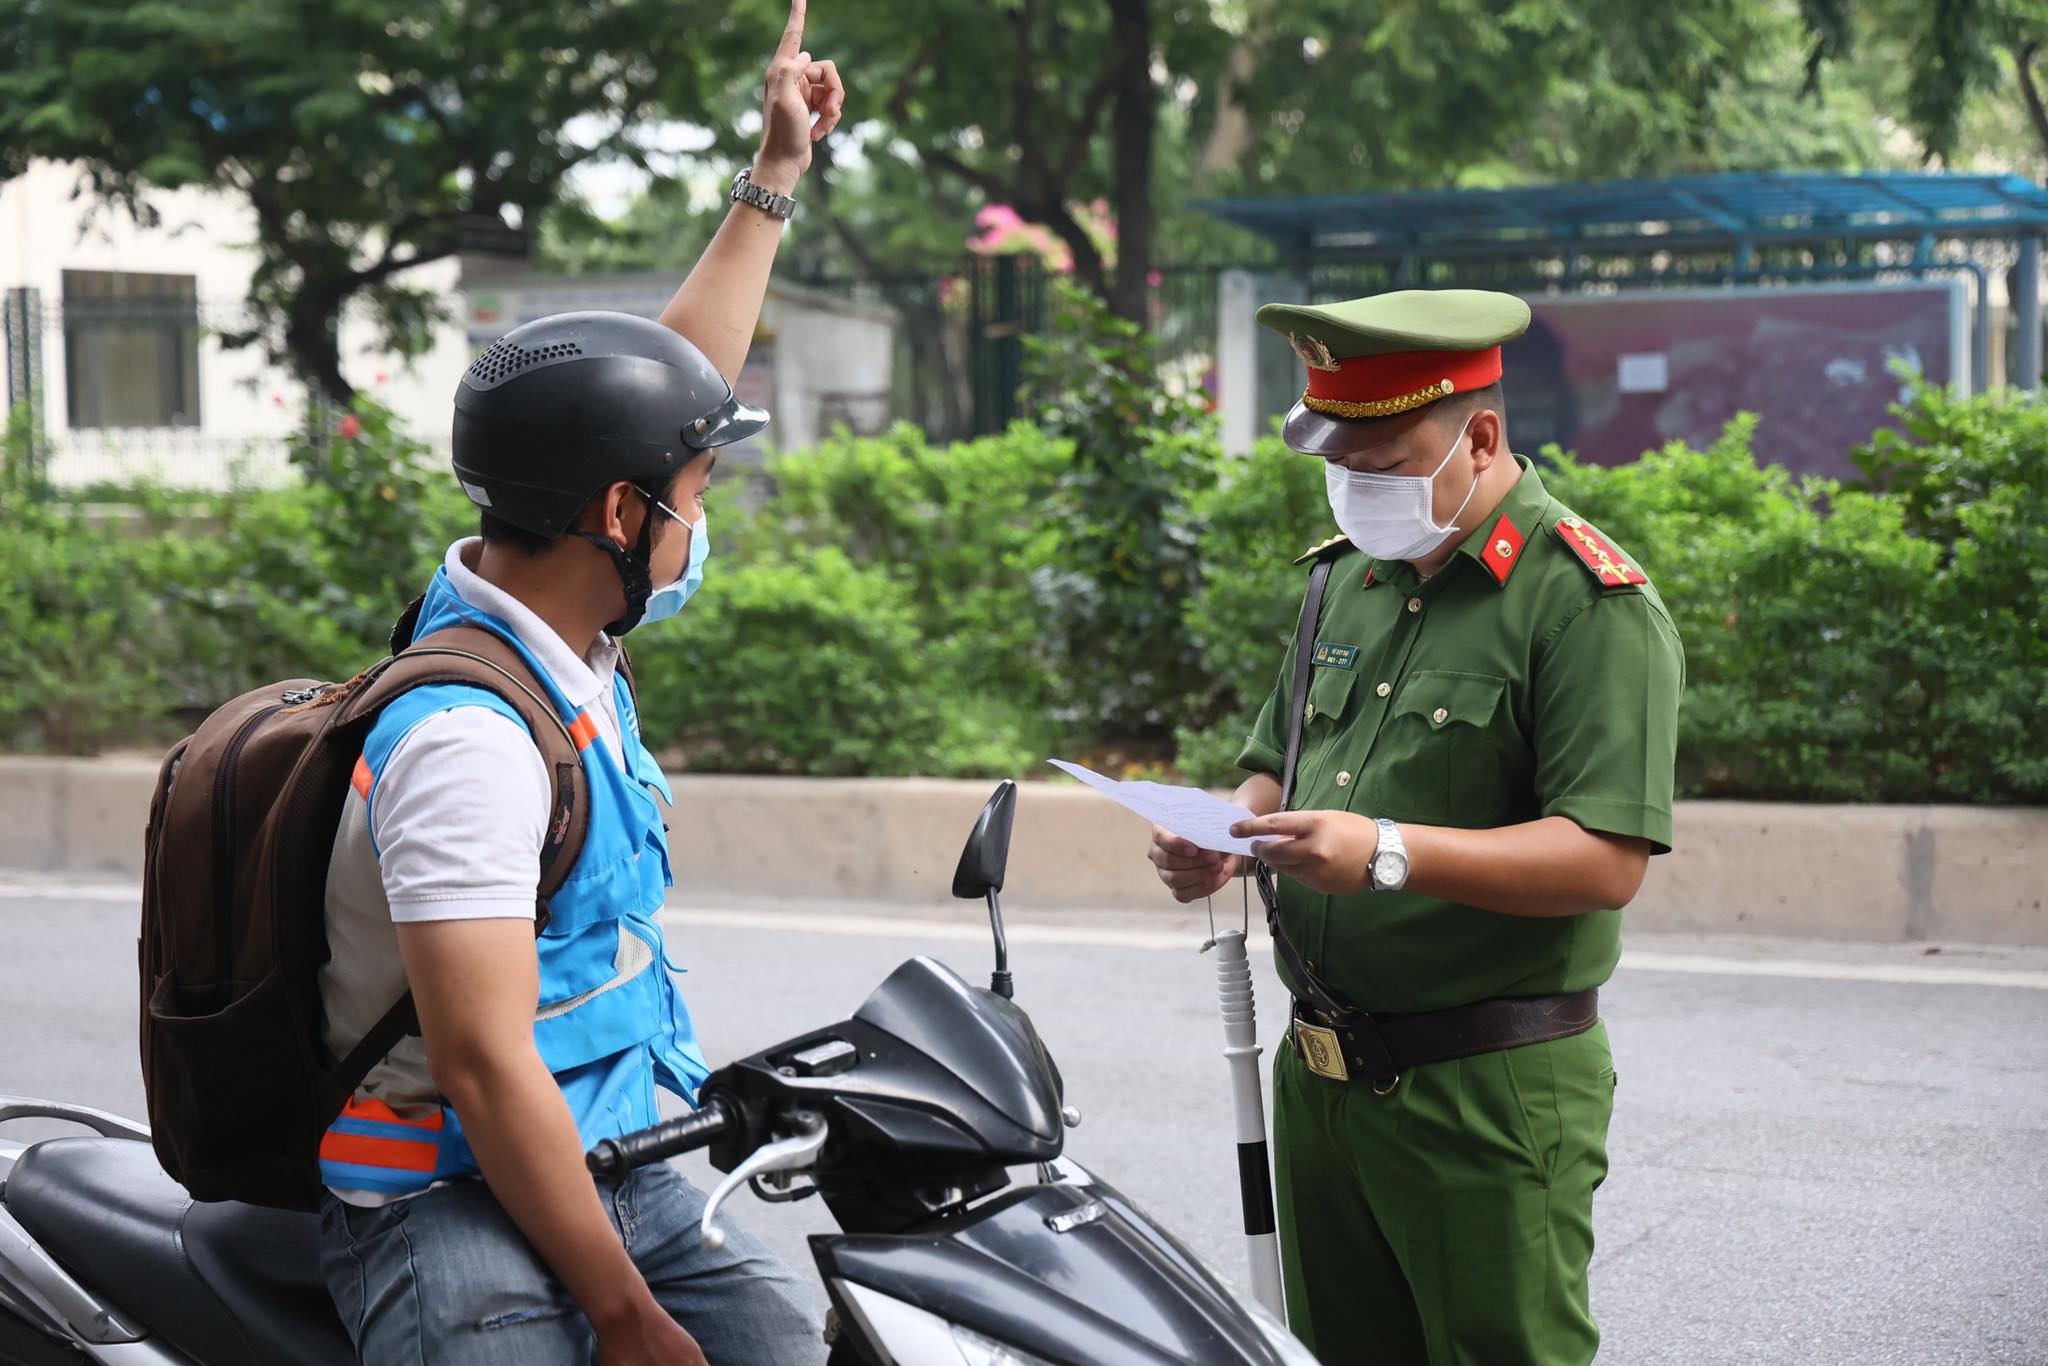 Lực lượng chức năng kiểm tra giấy đi đường của người dân